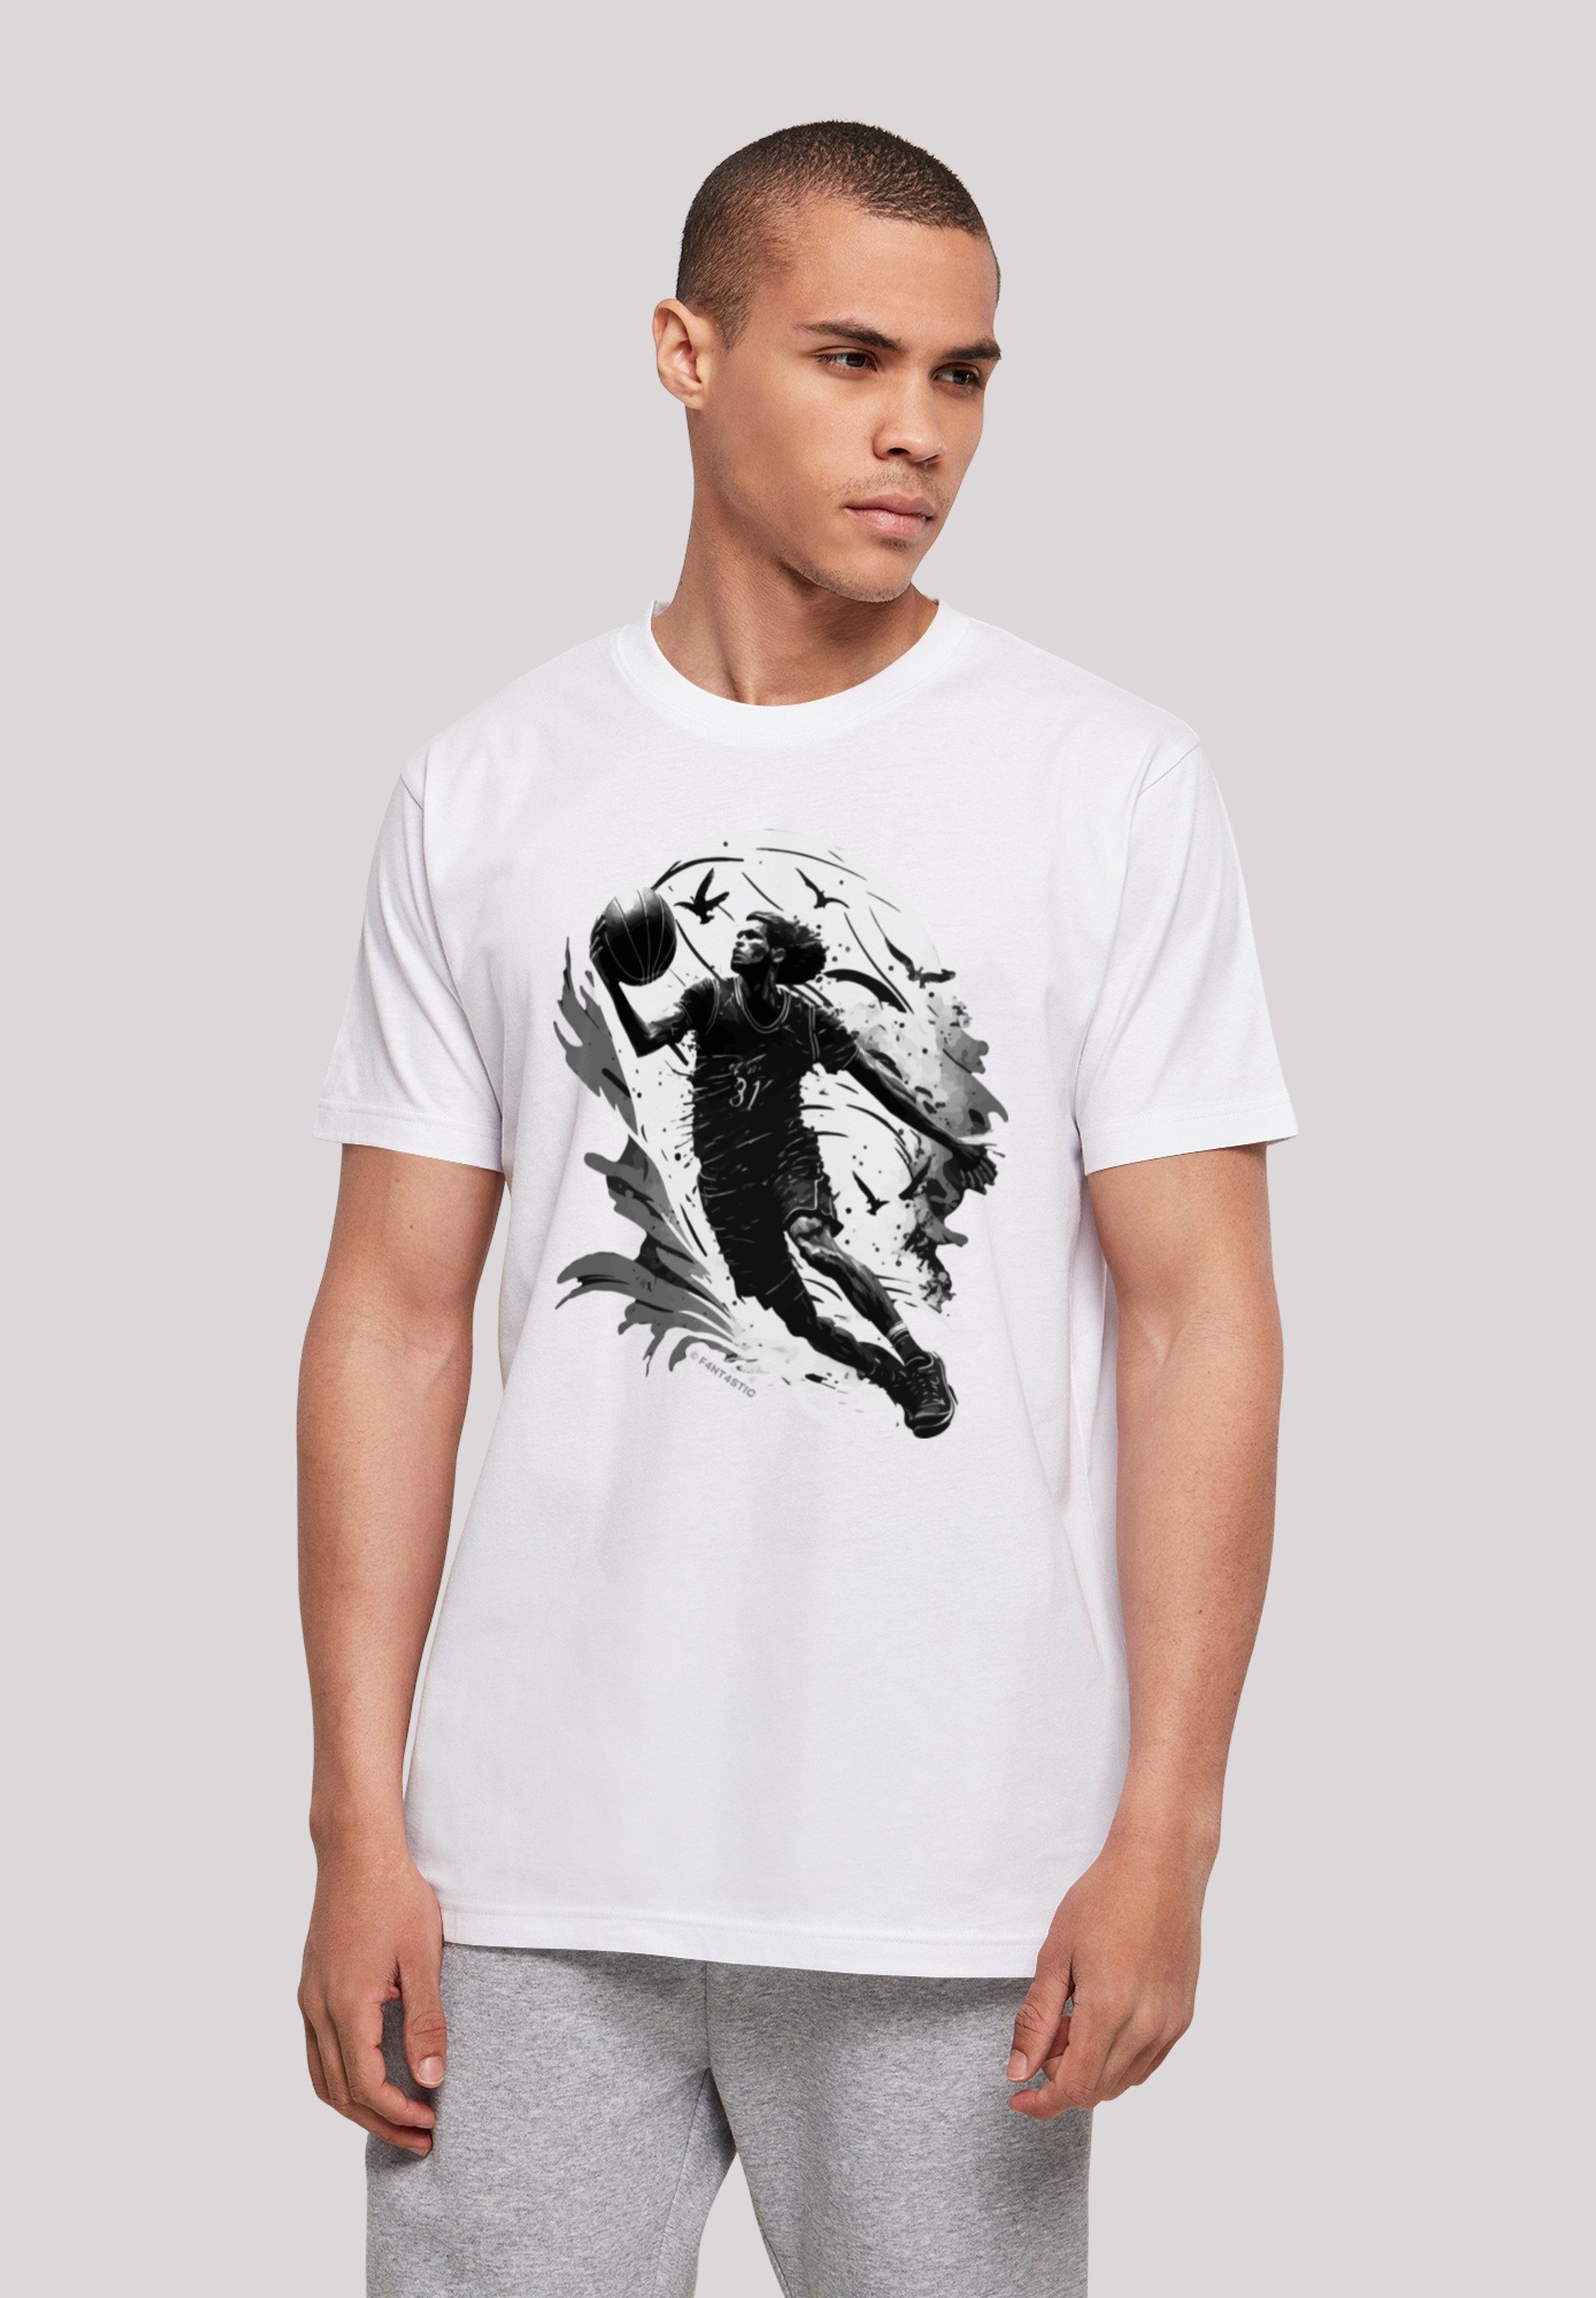 Spieler Print Basketball weiß F4NT4STIC T-Shirt